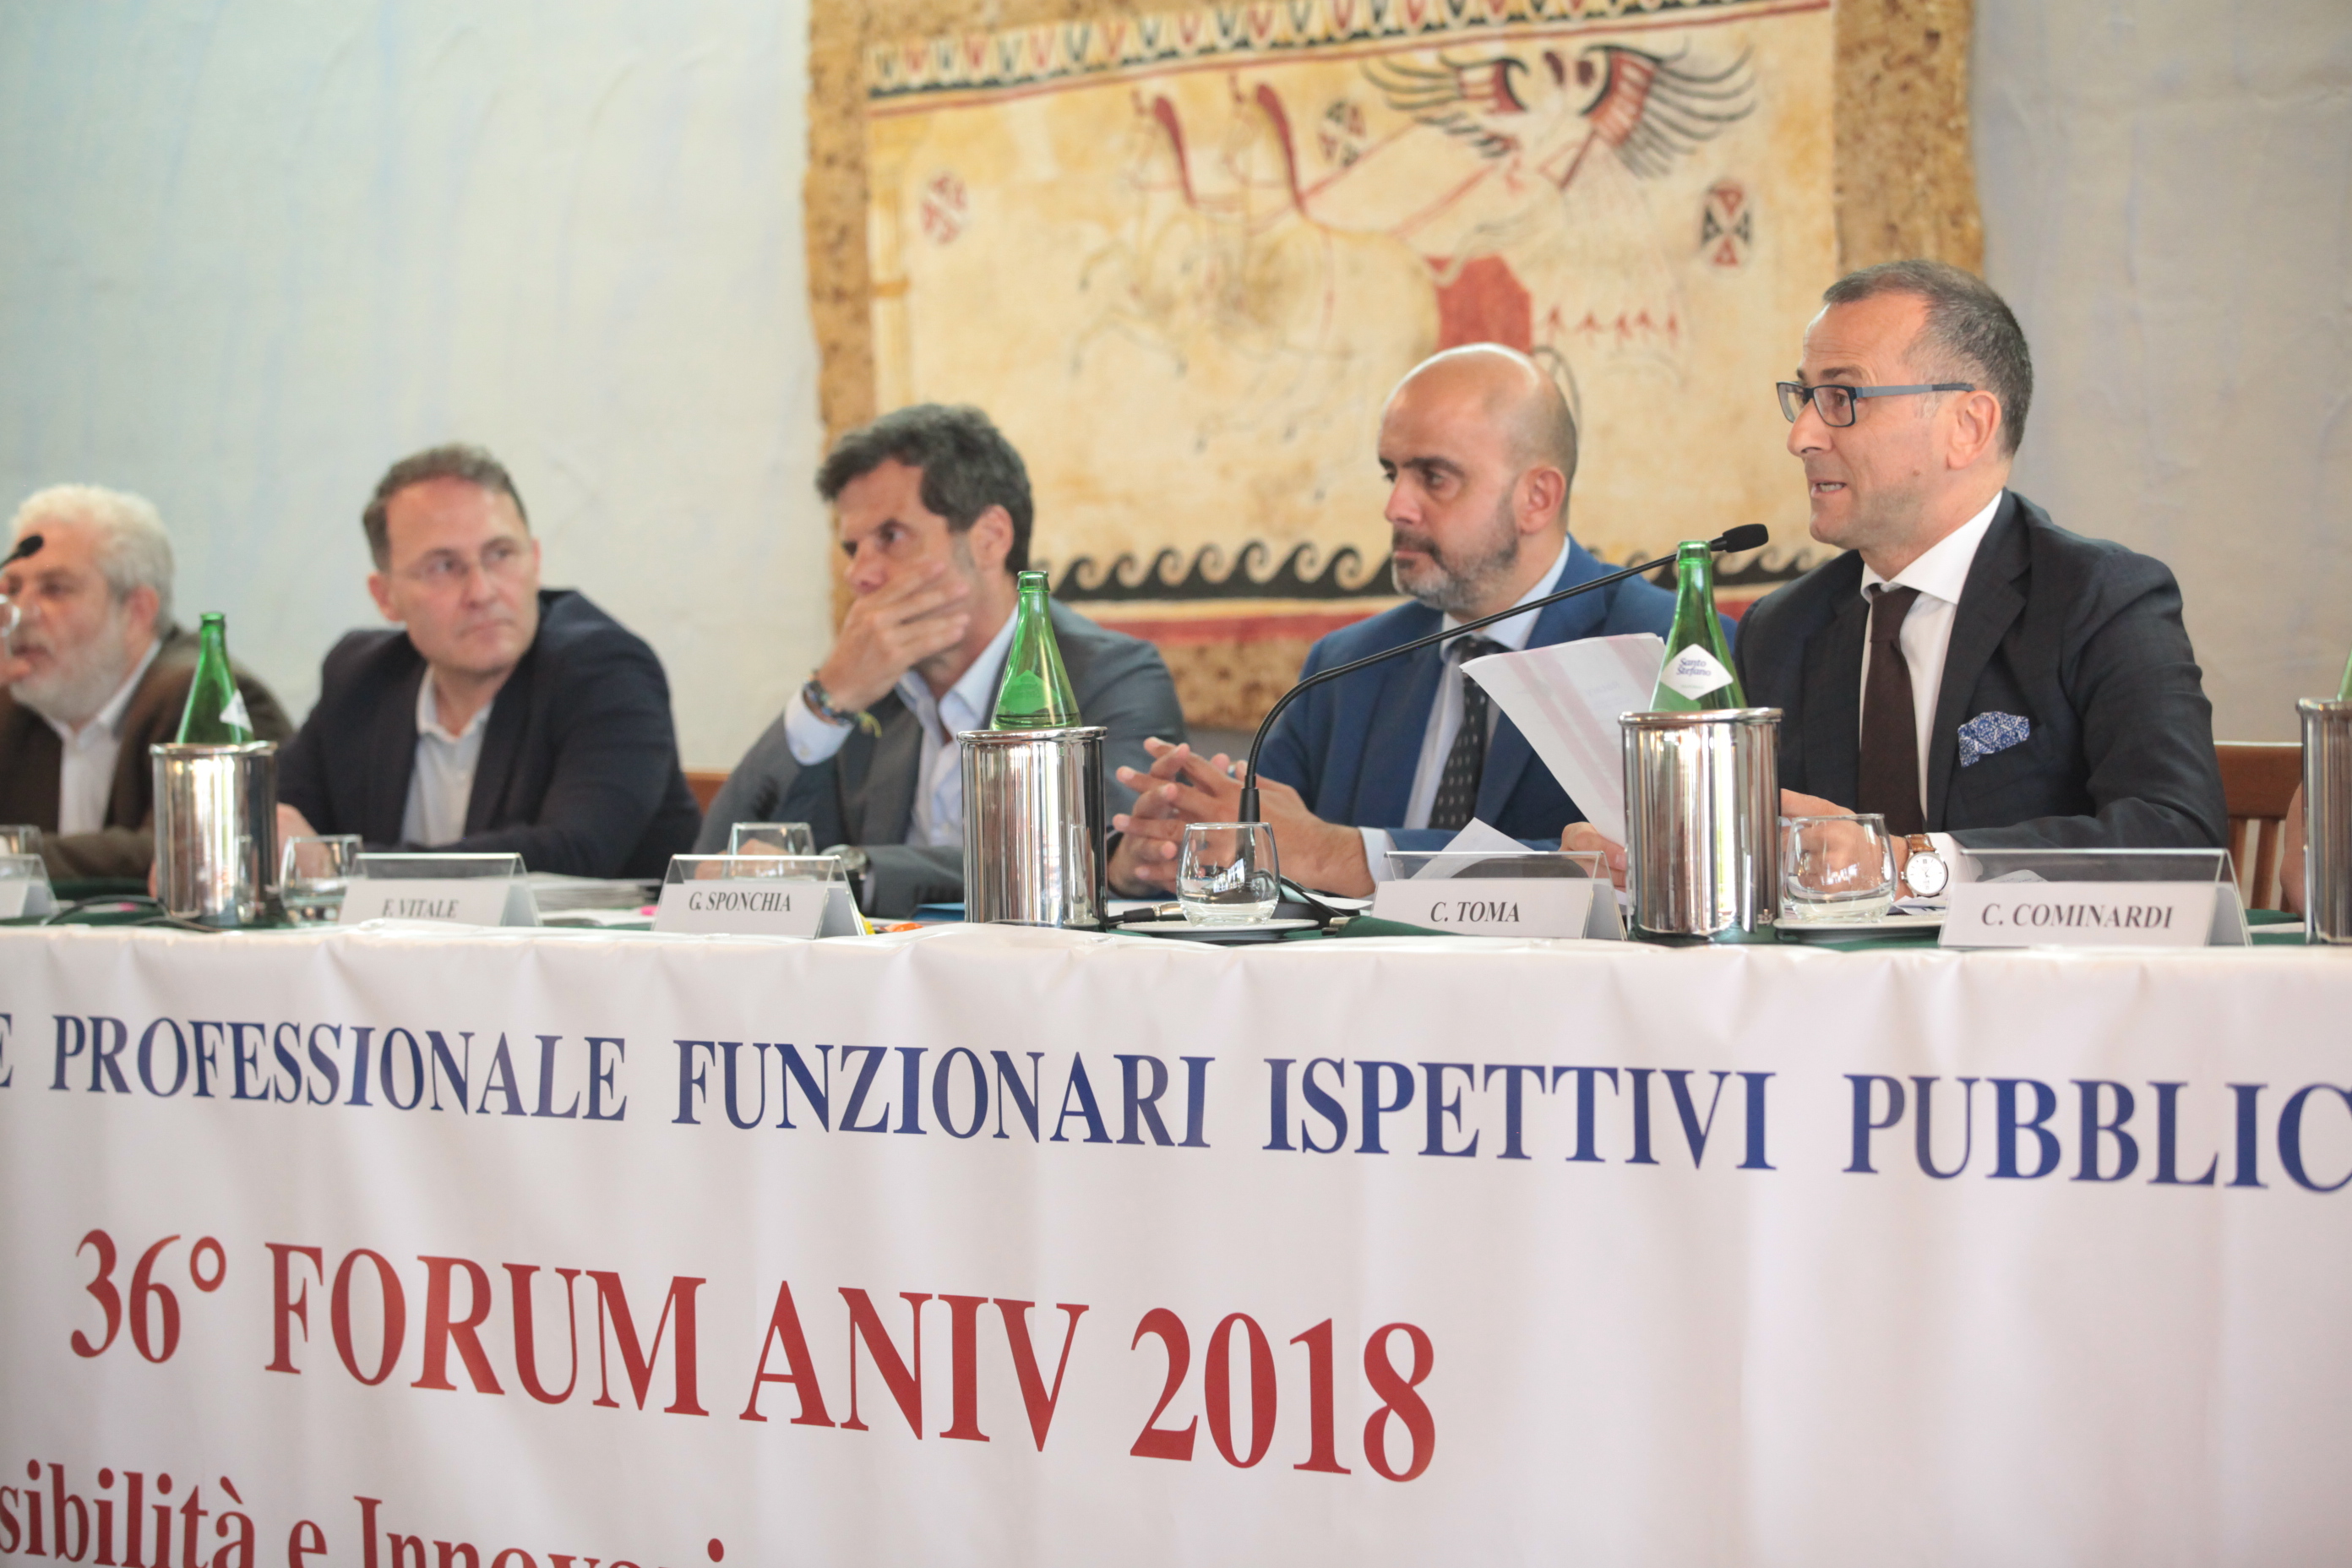 Relatori terza giornata forum ANIV 2018 1